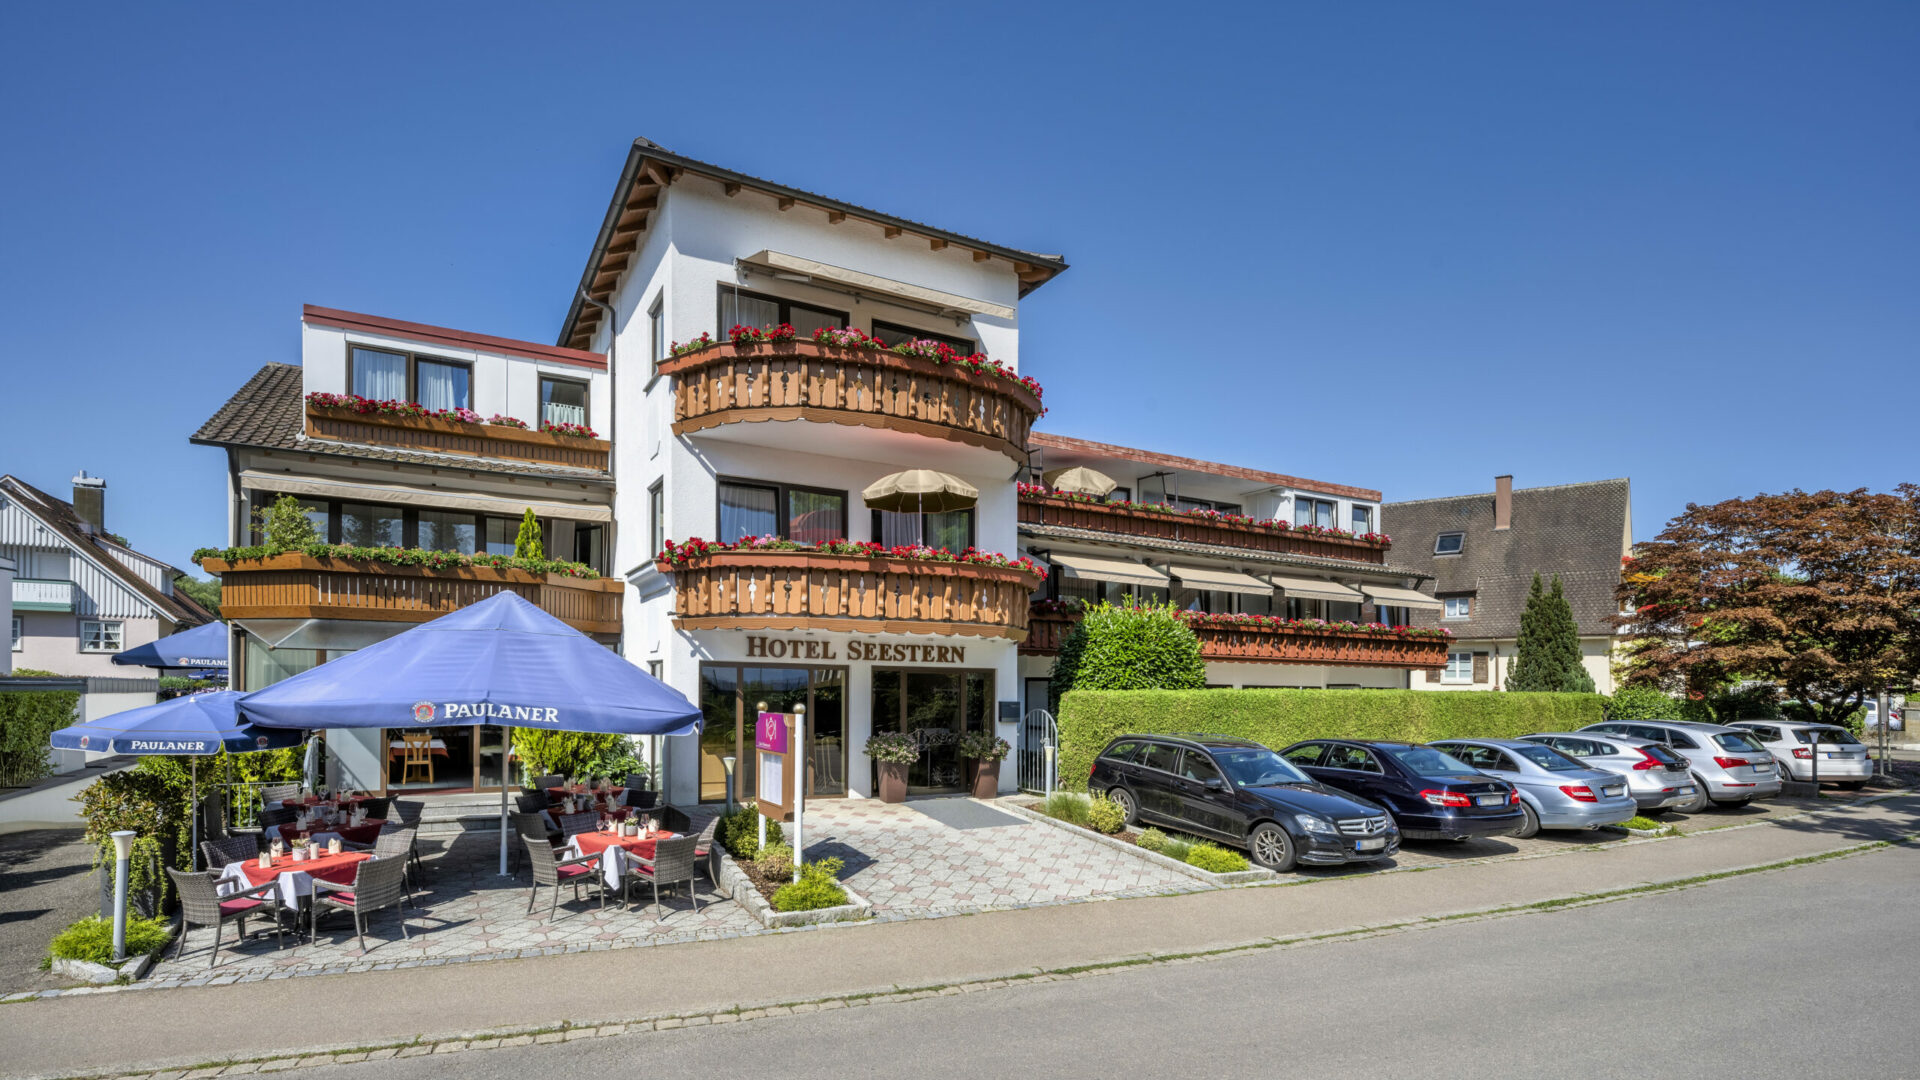 Hotel Seestern, Wasserburg, Bodensee